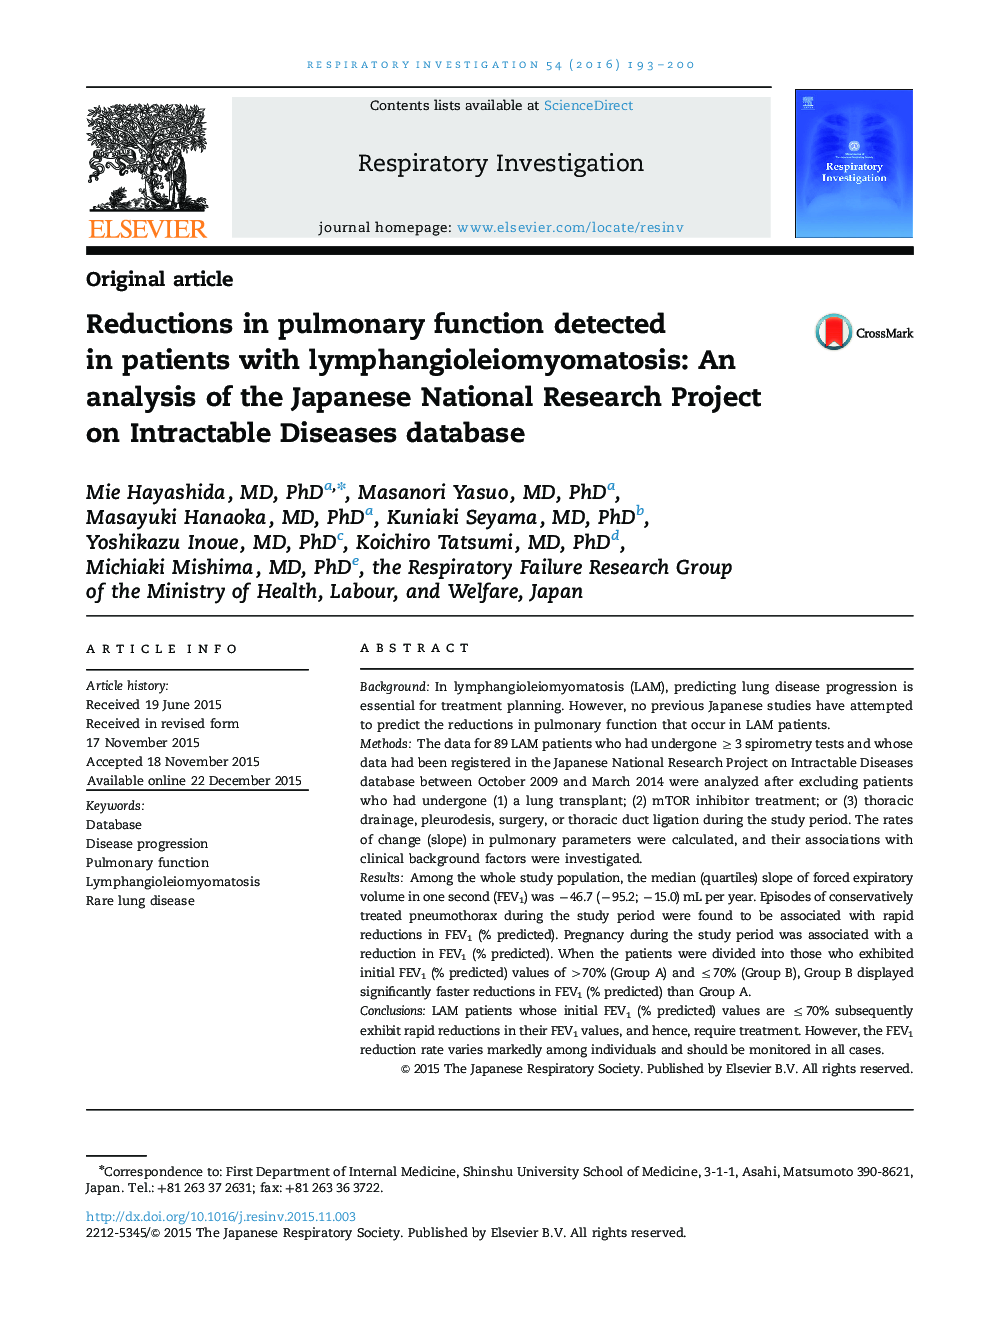 کاهش کارکرد ریه در بیماران مبتلا به لنفونژیلیوموئوماتوزیس: تجزیه و تحلیل پروژه تحقیقاتی ملی ژاپن در زمینه پایگاه های بیماری های قابل پذیرش 